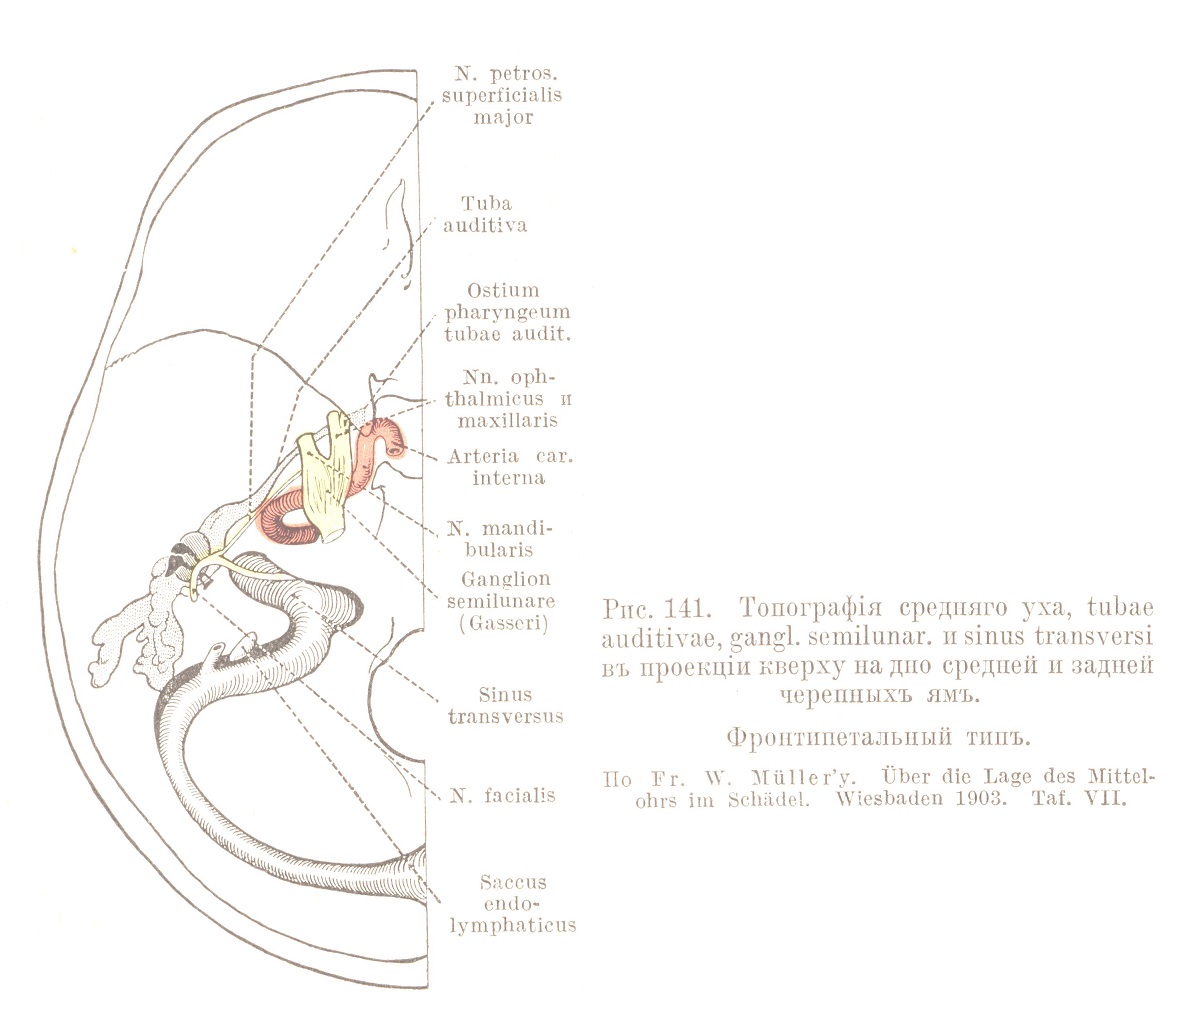 Топографія средняго уха, tubae auditivae, gang! semilunar, и sinus transversi въ проекціи кверху на дно средней н задней черепныхъ ямъ.